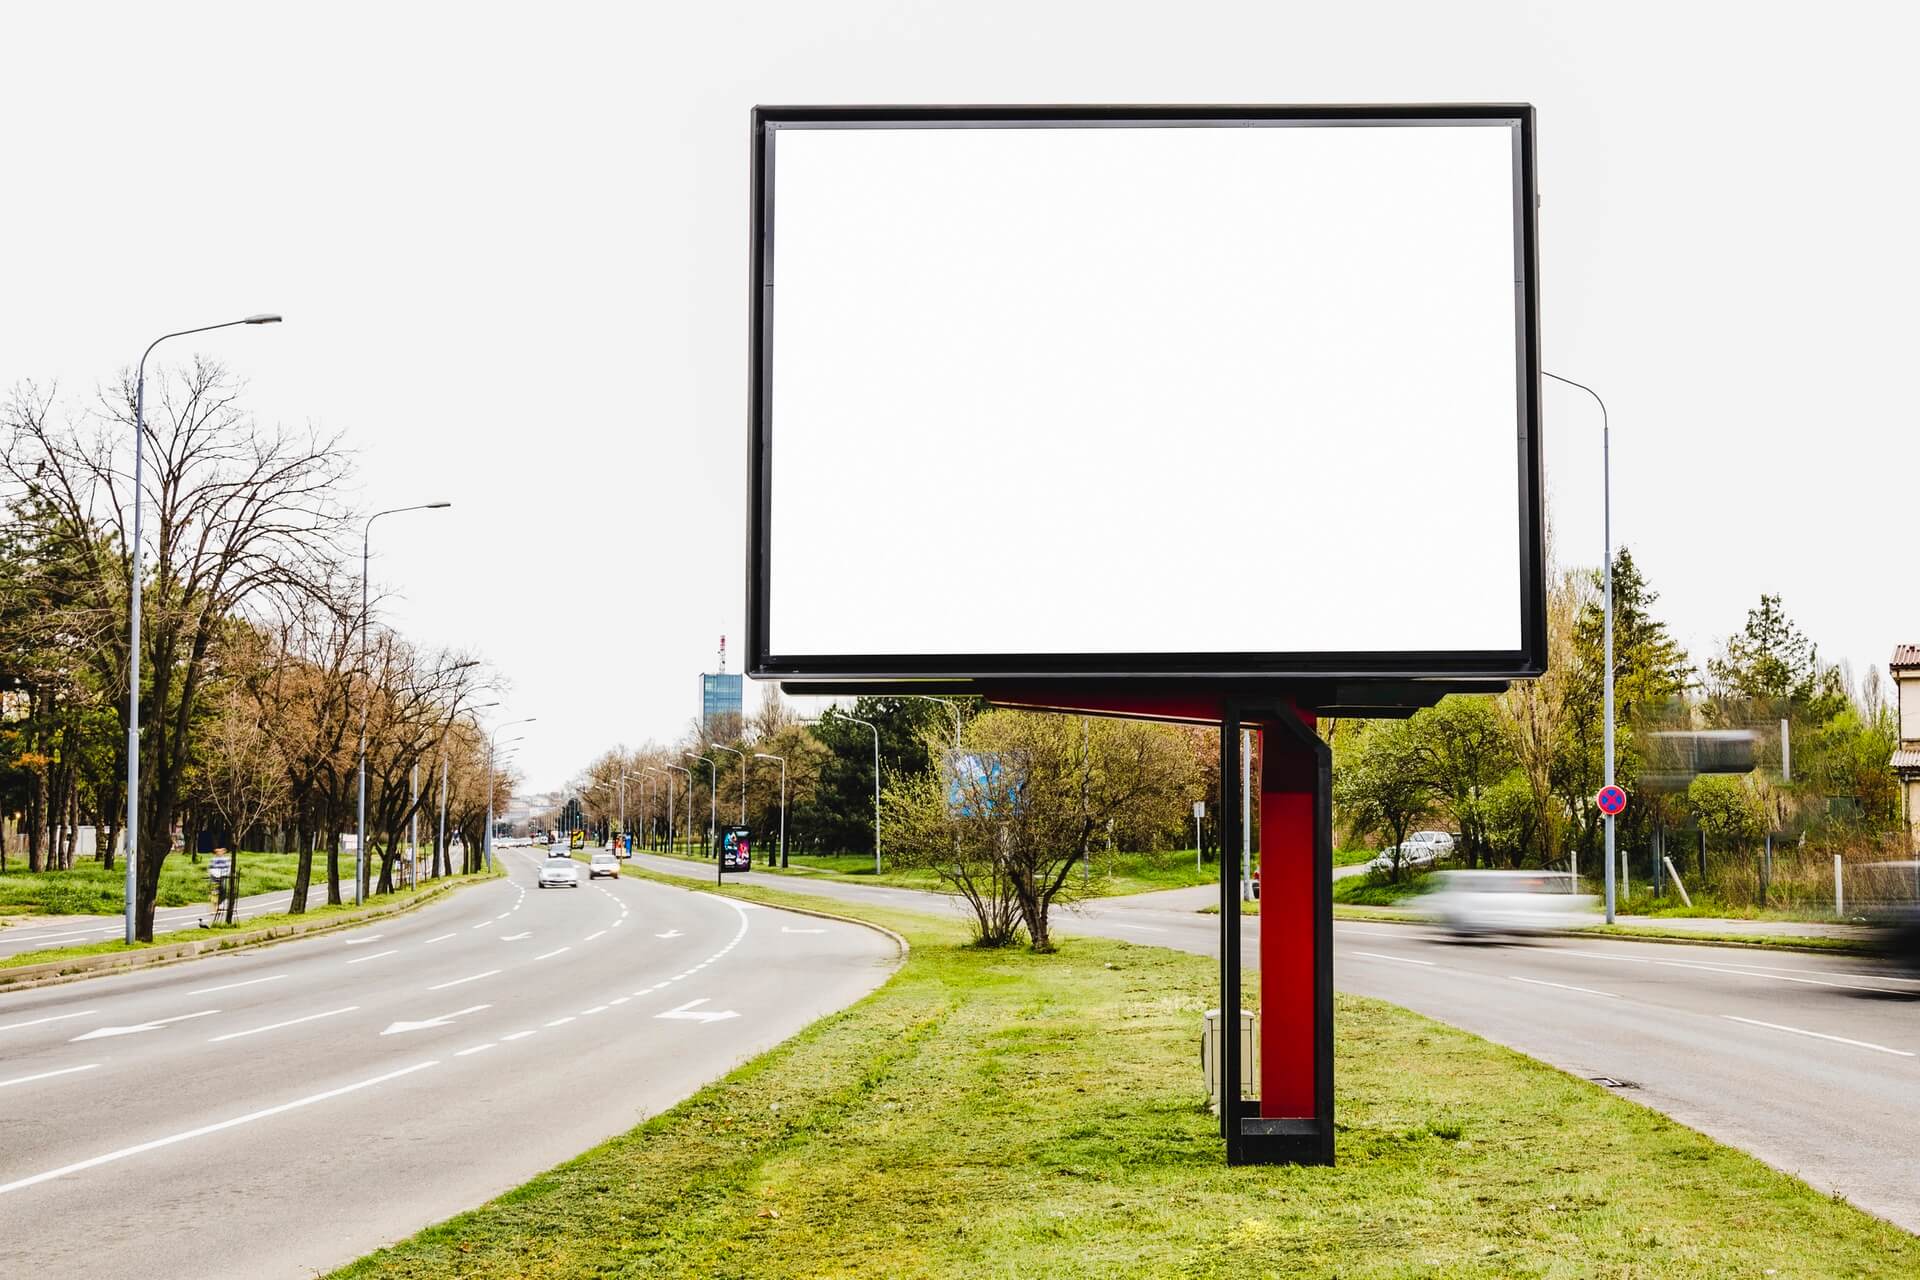 Lienzos callejeros: ¿Cómo se convierten las vallas publicitarias LED en un medio para la expresión creativa urbana?